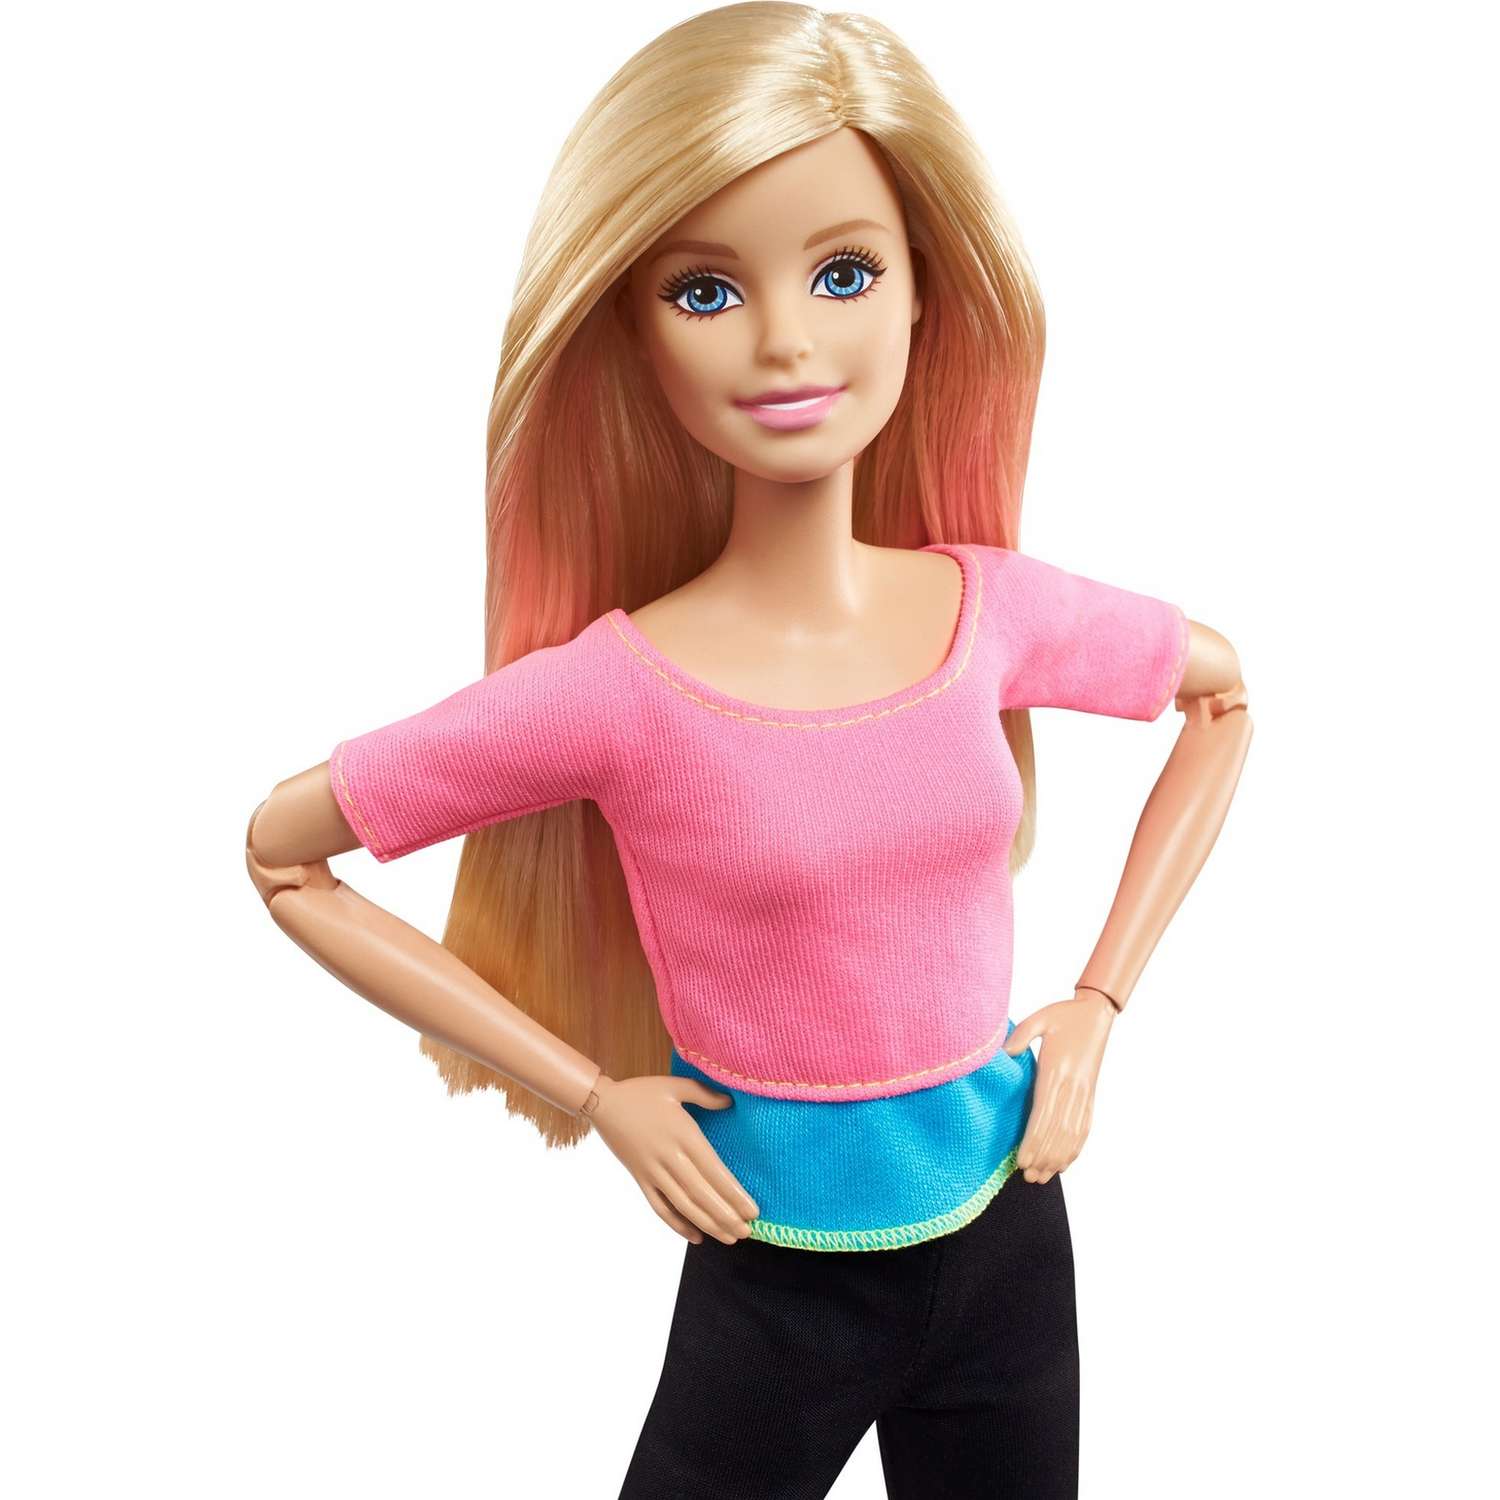 Кукла Barbie Безграничные движения Блондинка с артикуляцией тела DHL82 DHL82 - фото 8